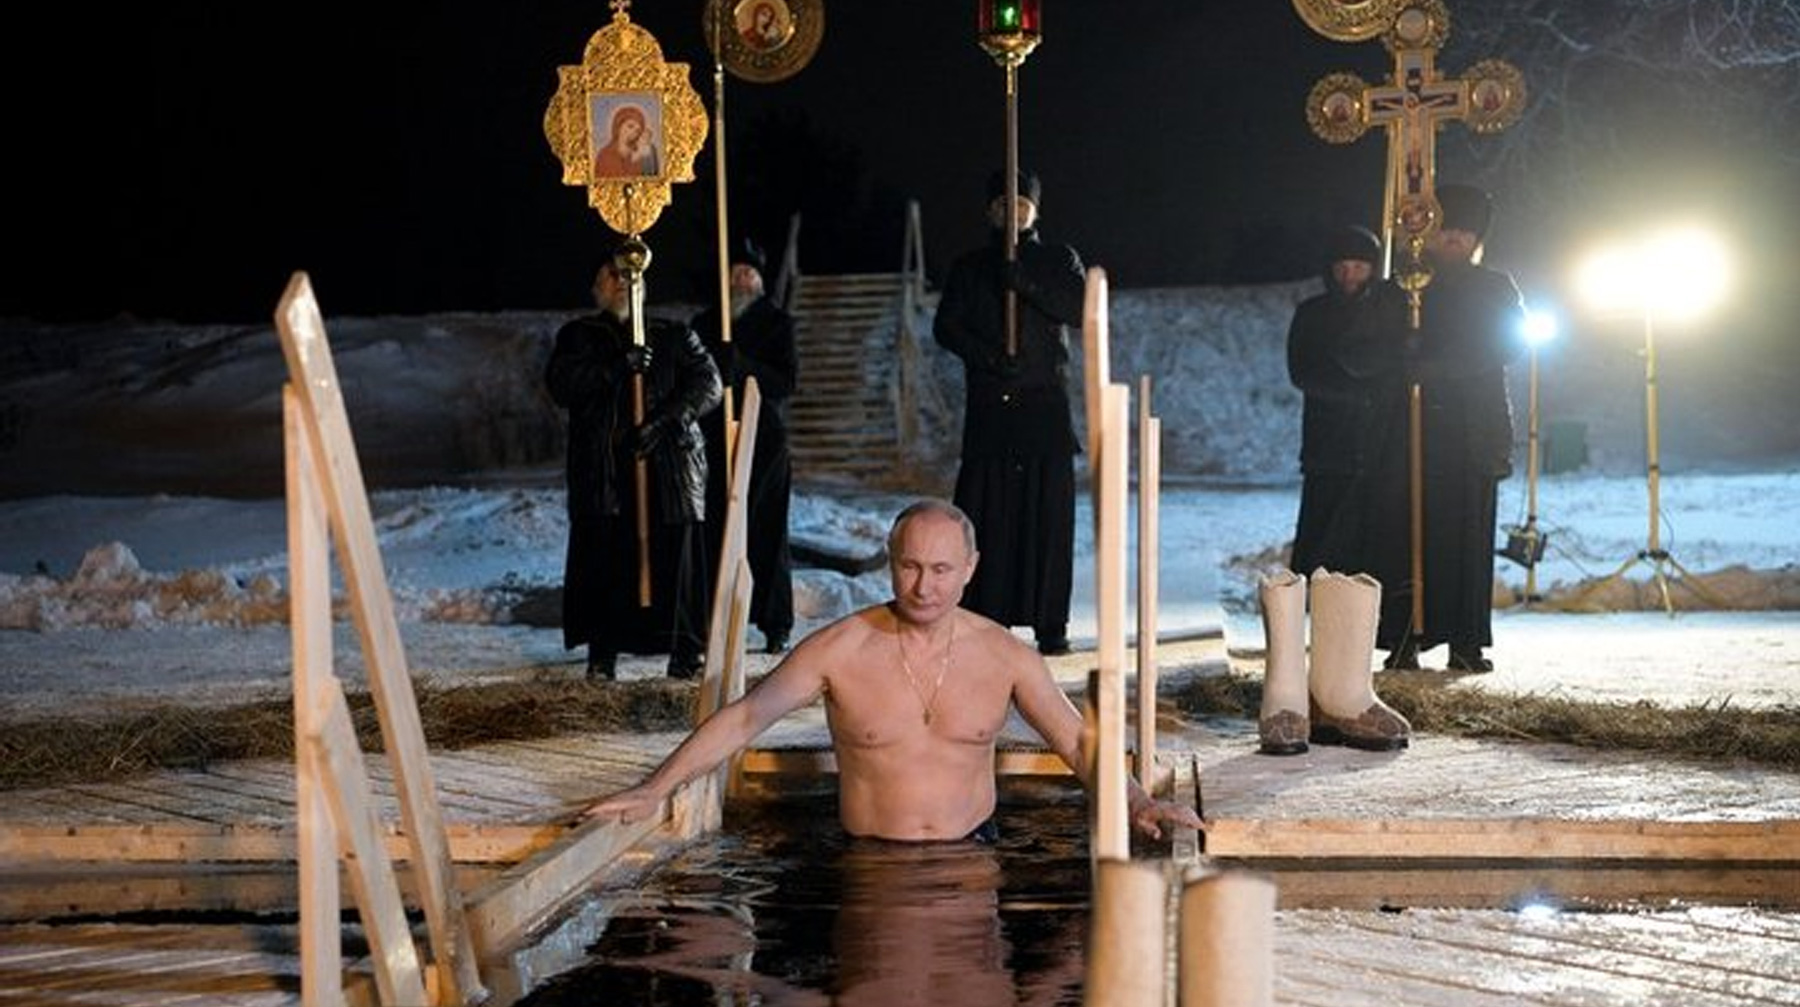 В отличие от прошлого года в этот раз президент окунулся в иордань приватным образом где-то в Подмосковье Владимир Путин участвовал в крещенских купаниях на озере Селигер, 2018 г.